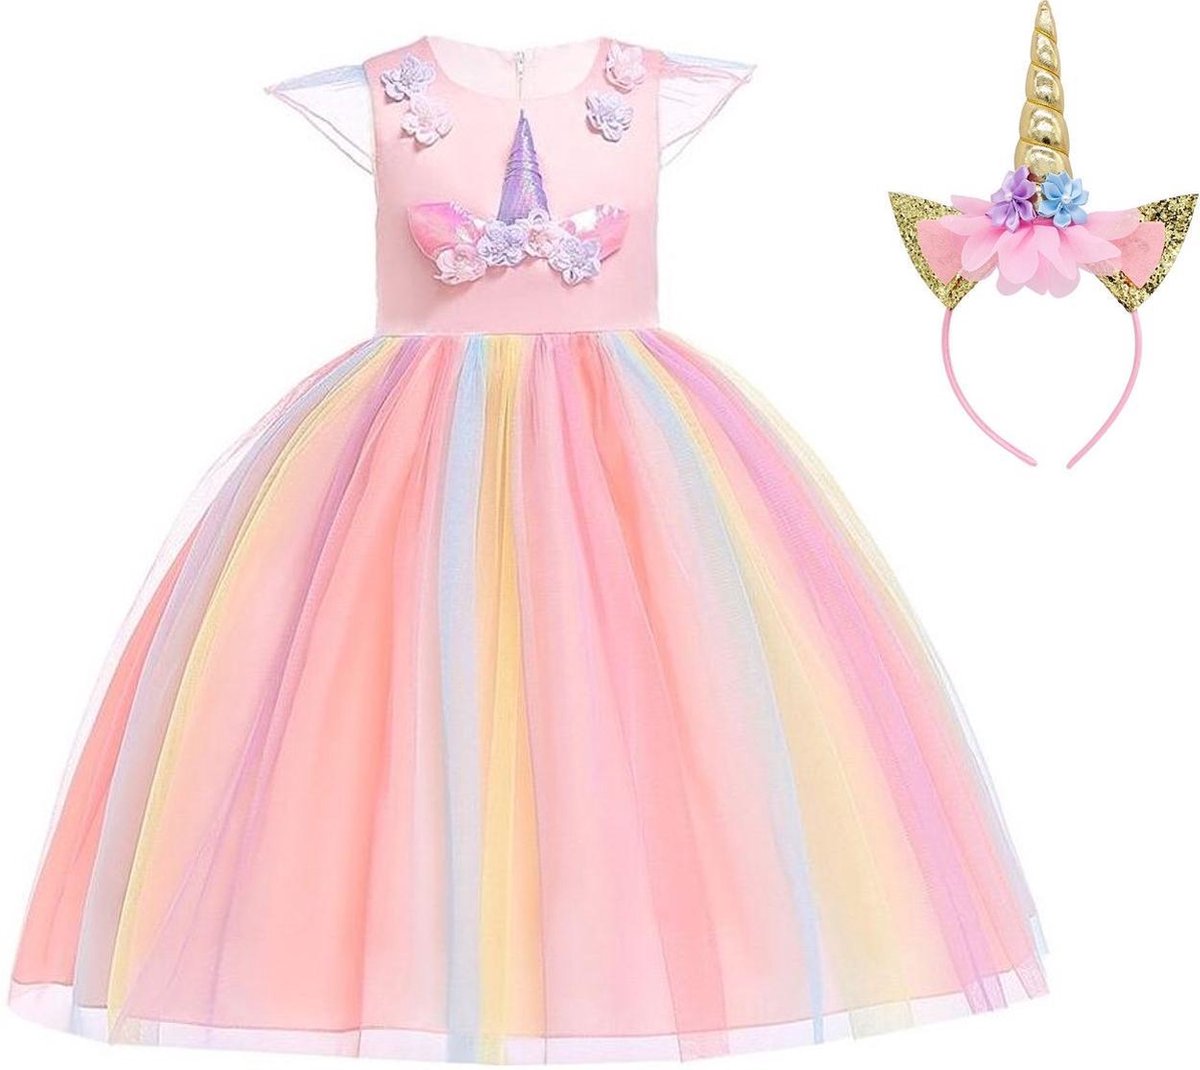 Eenhoorn jurk unicorn jurk eenhoorn kostuum - roze Classic 134-140 (140) + haarband Prinsessenjurk meisje verkleedkleren meisje